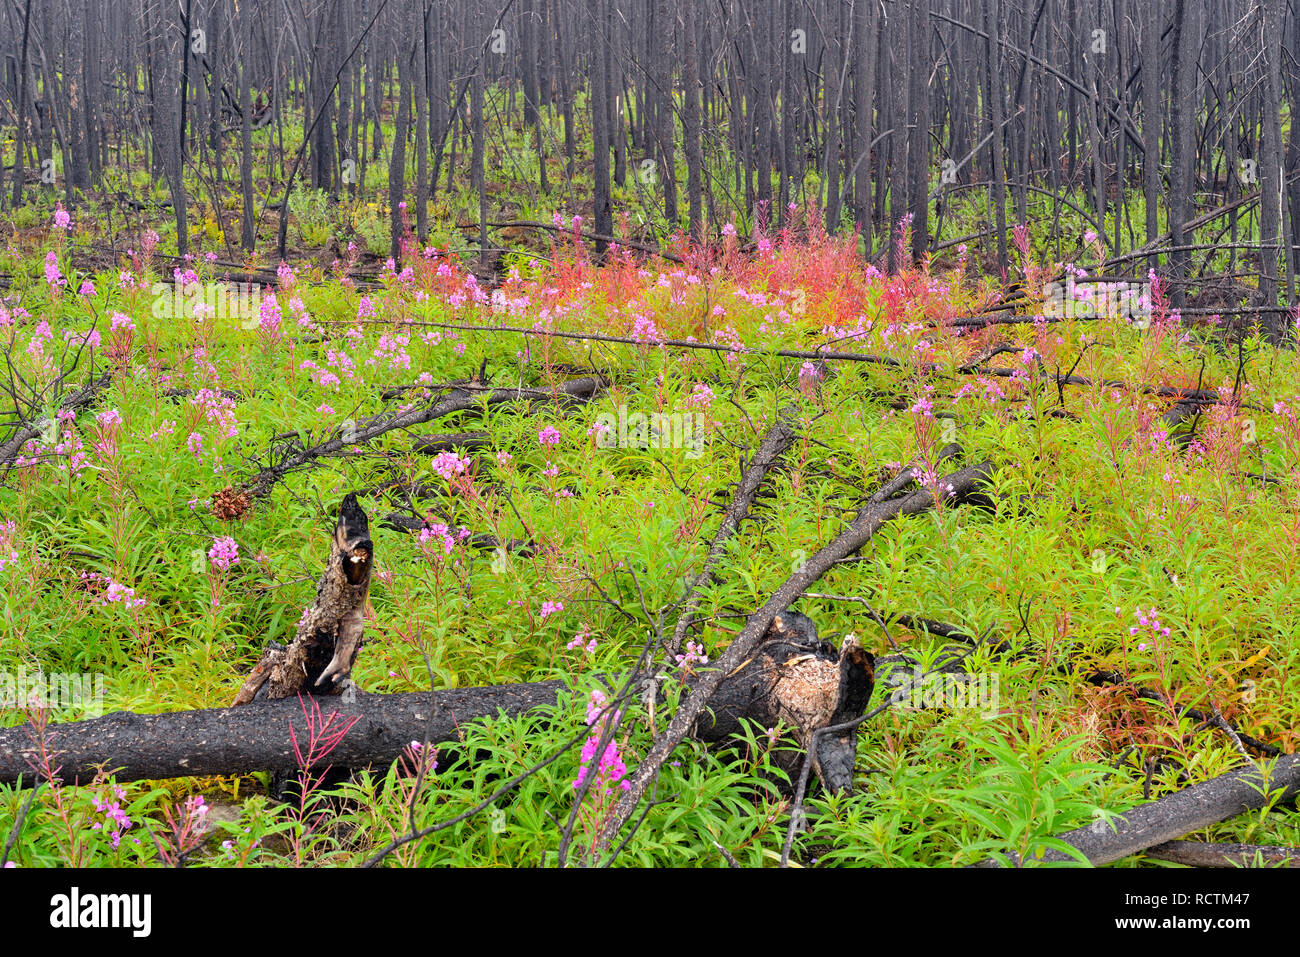 Los recientes incendios forestales con zona fireweed, la Hwy 3 hacia el norte hasta Yellowknife, Territorios del Noroeste, Canadá Foto de stock